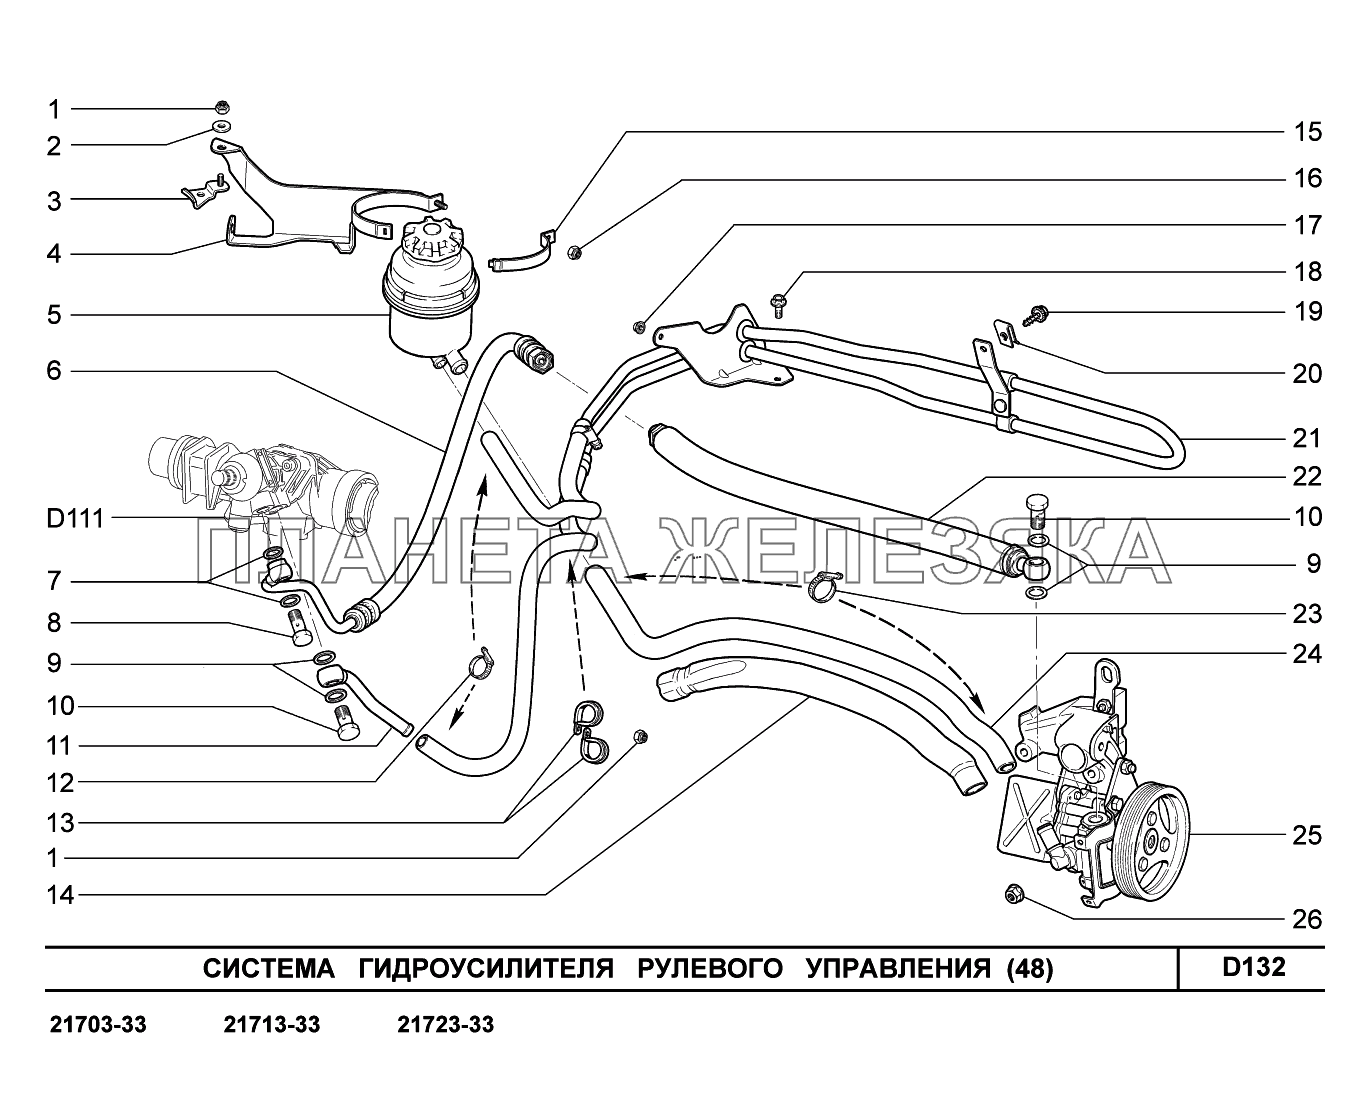 D132. Система гидроусилителя рулевого управления ВАЗ-2170 